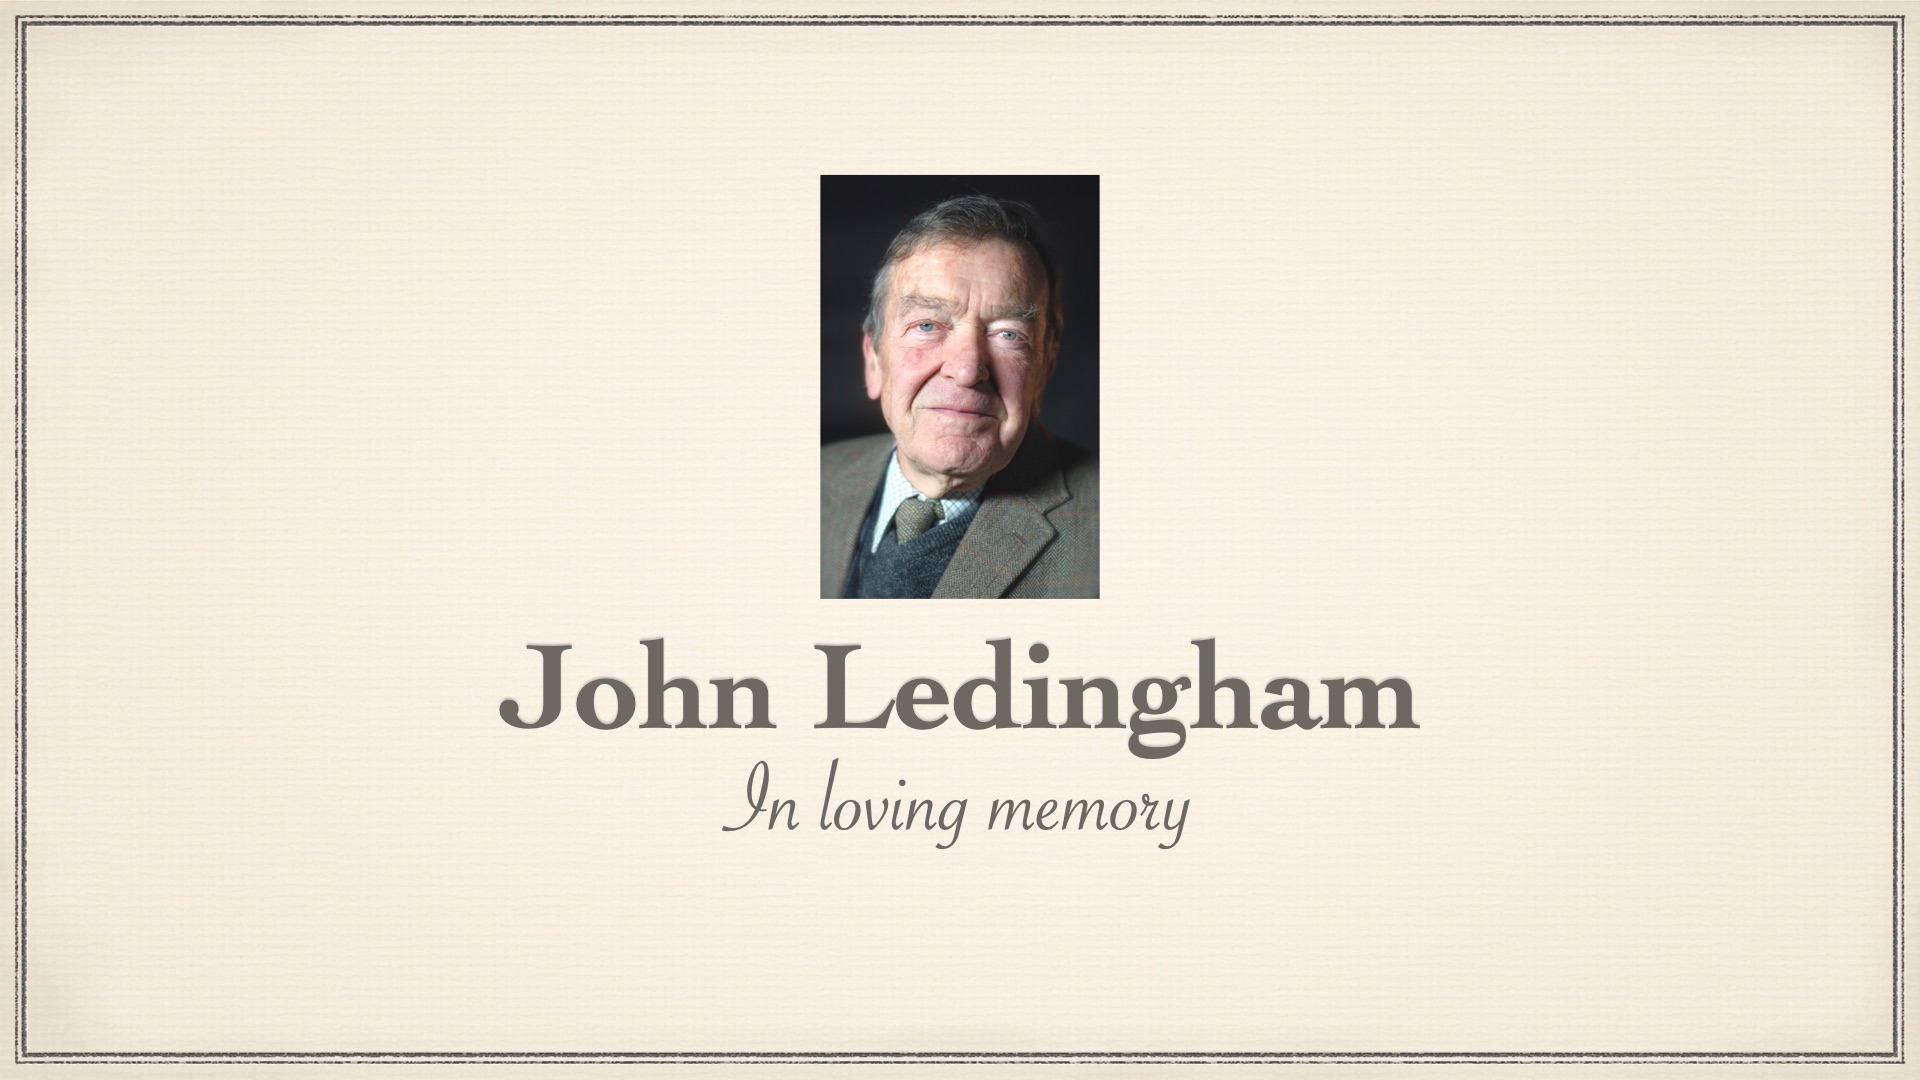 Funeral of John Ledingham – Thursday 6th July at 11:30am